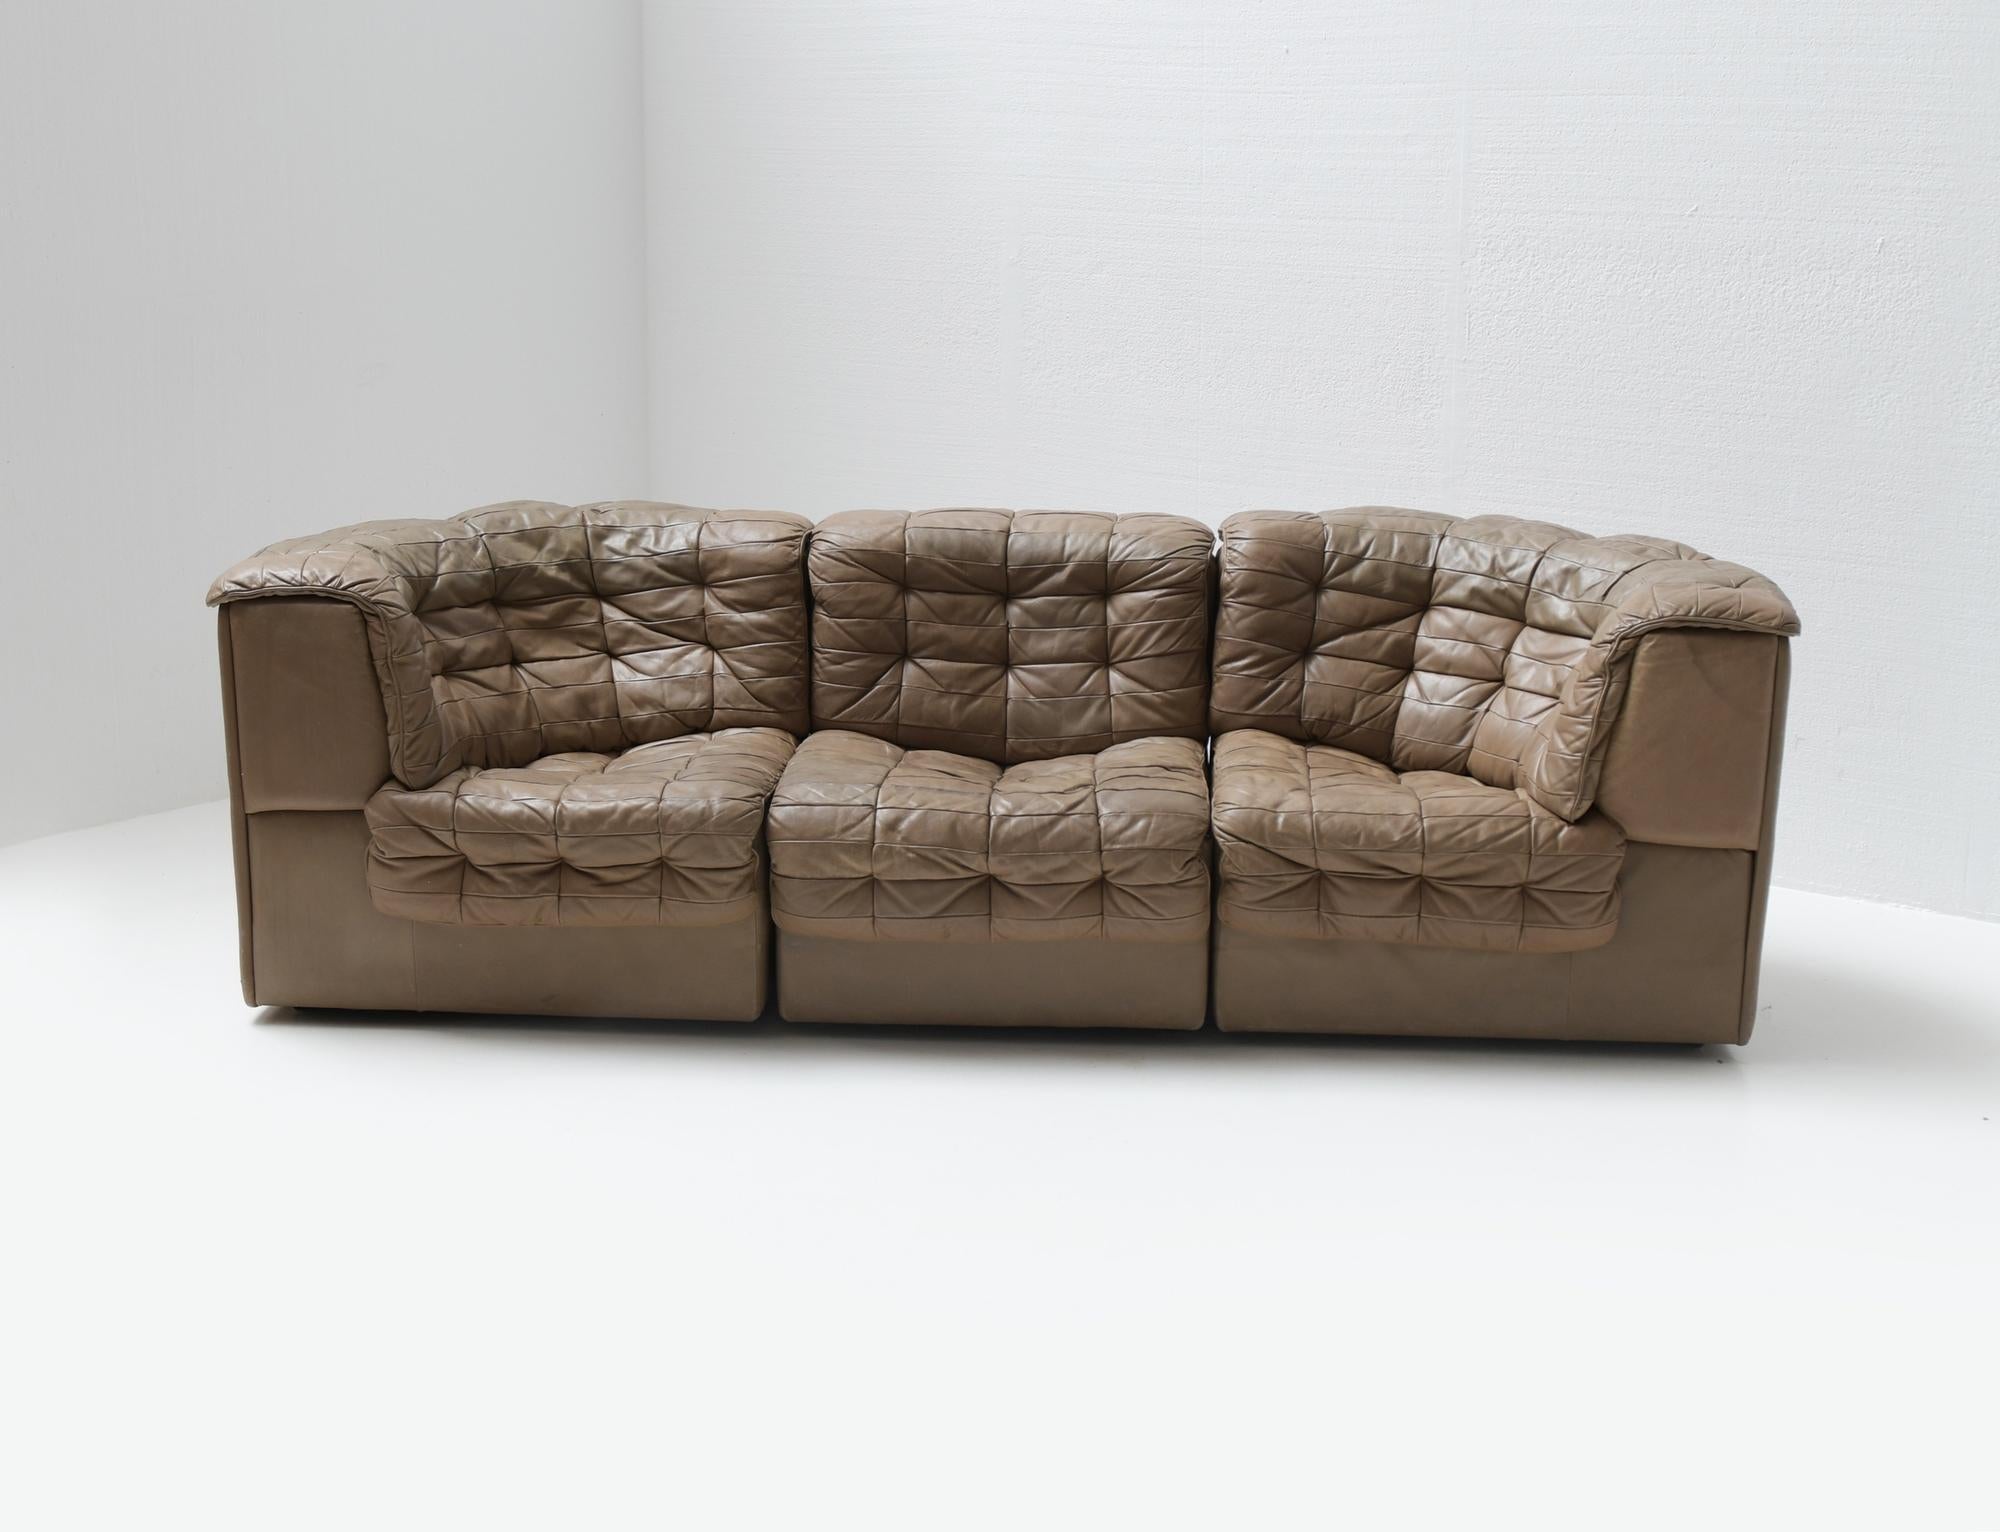 De Sede 'DS-11' Modulares Patchwork-Sofa aus beigem Leder.

Noch 100% original.

Dieses hochwertige, von De Sede in den 1970er Jahren entworfene Sektionssofa besteht aus einem regulären Element und zwei Eckelementen.
So können Sie dieses Sofa